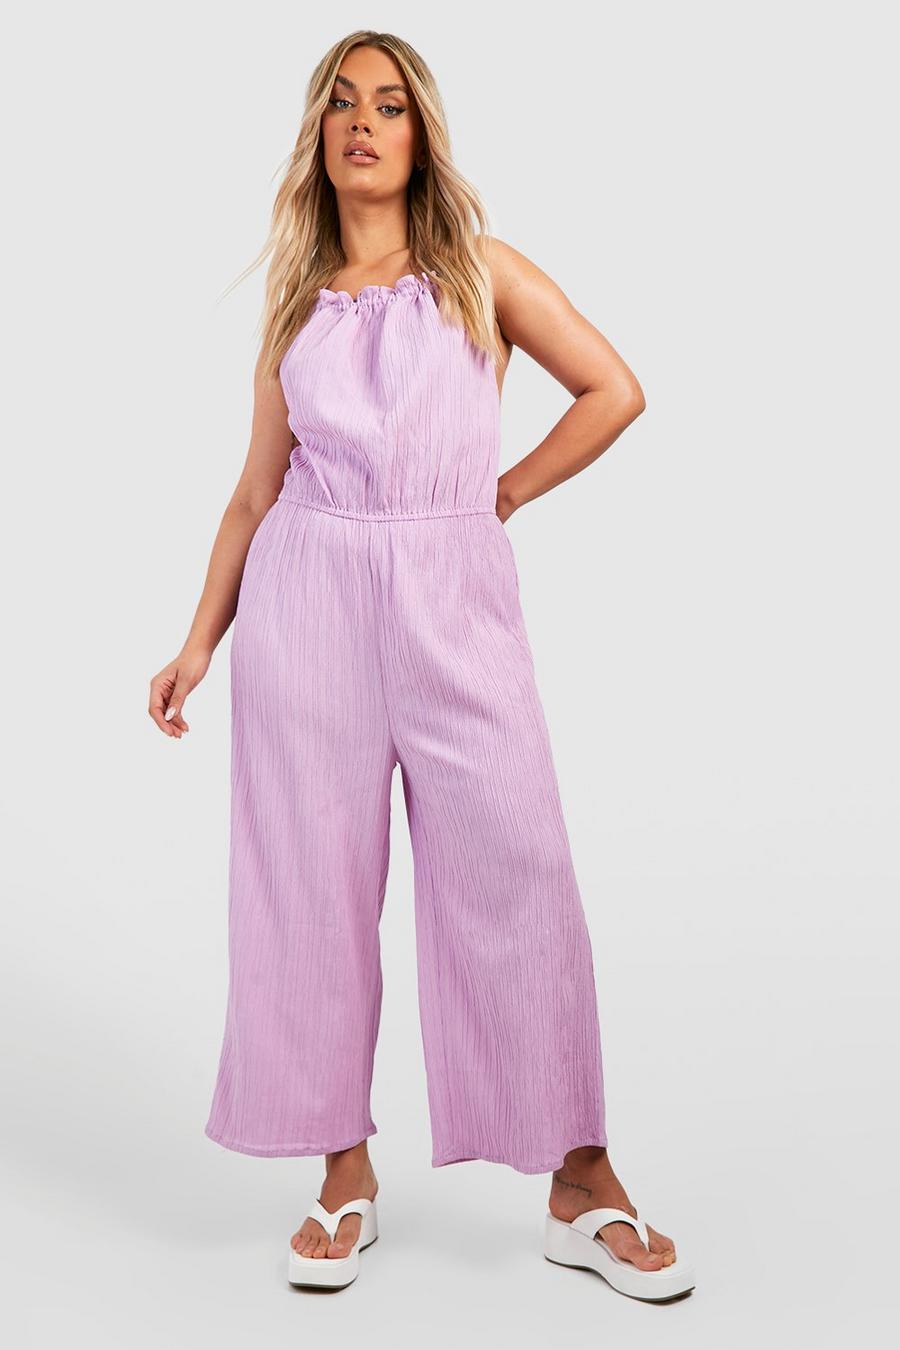 Grande taille - Combinaison jupe-culotte côtelée, Lilac purple